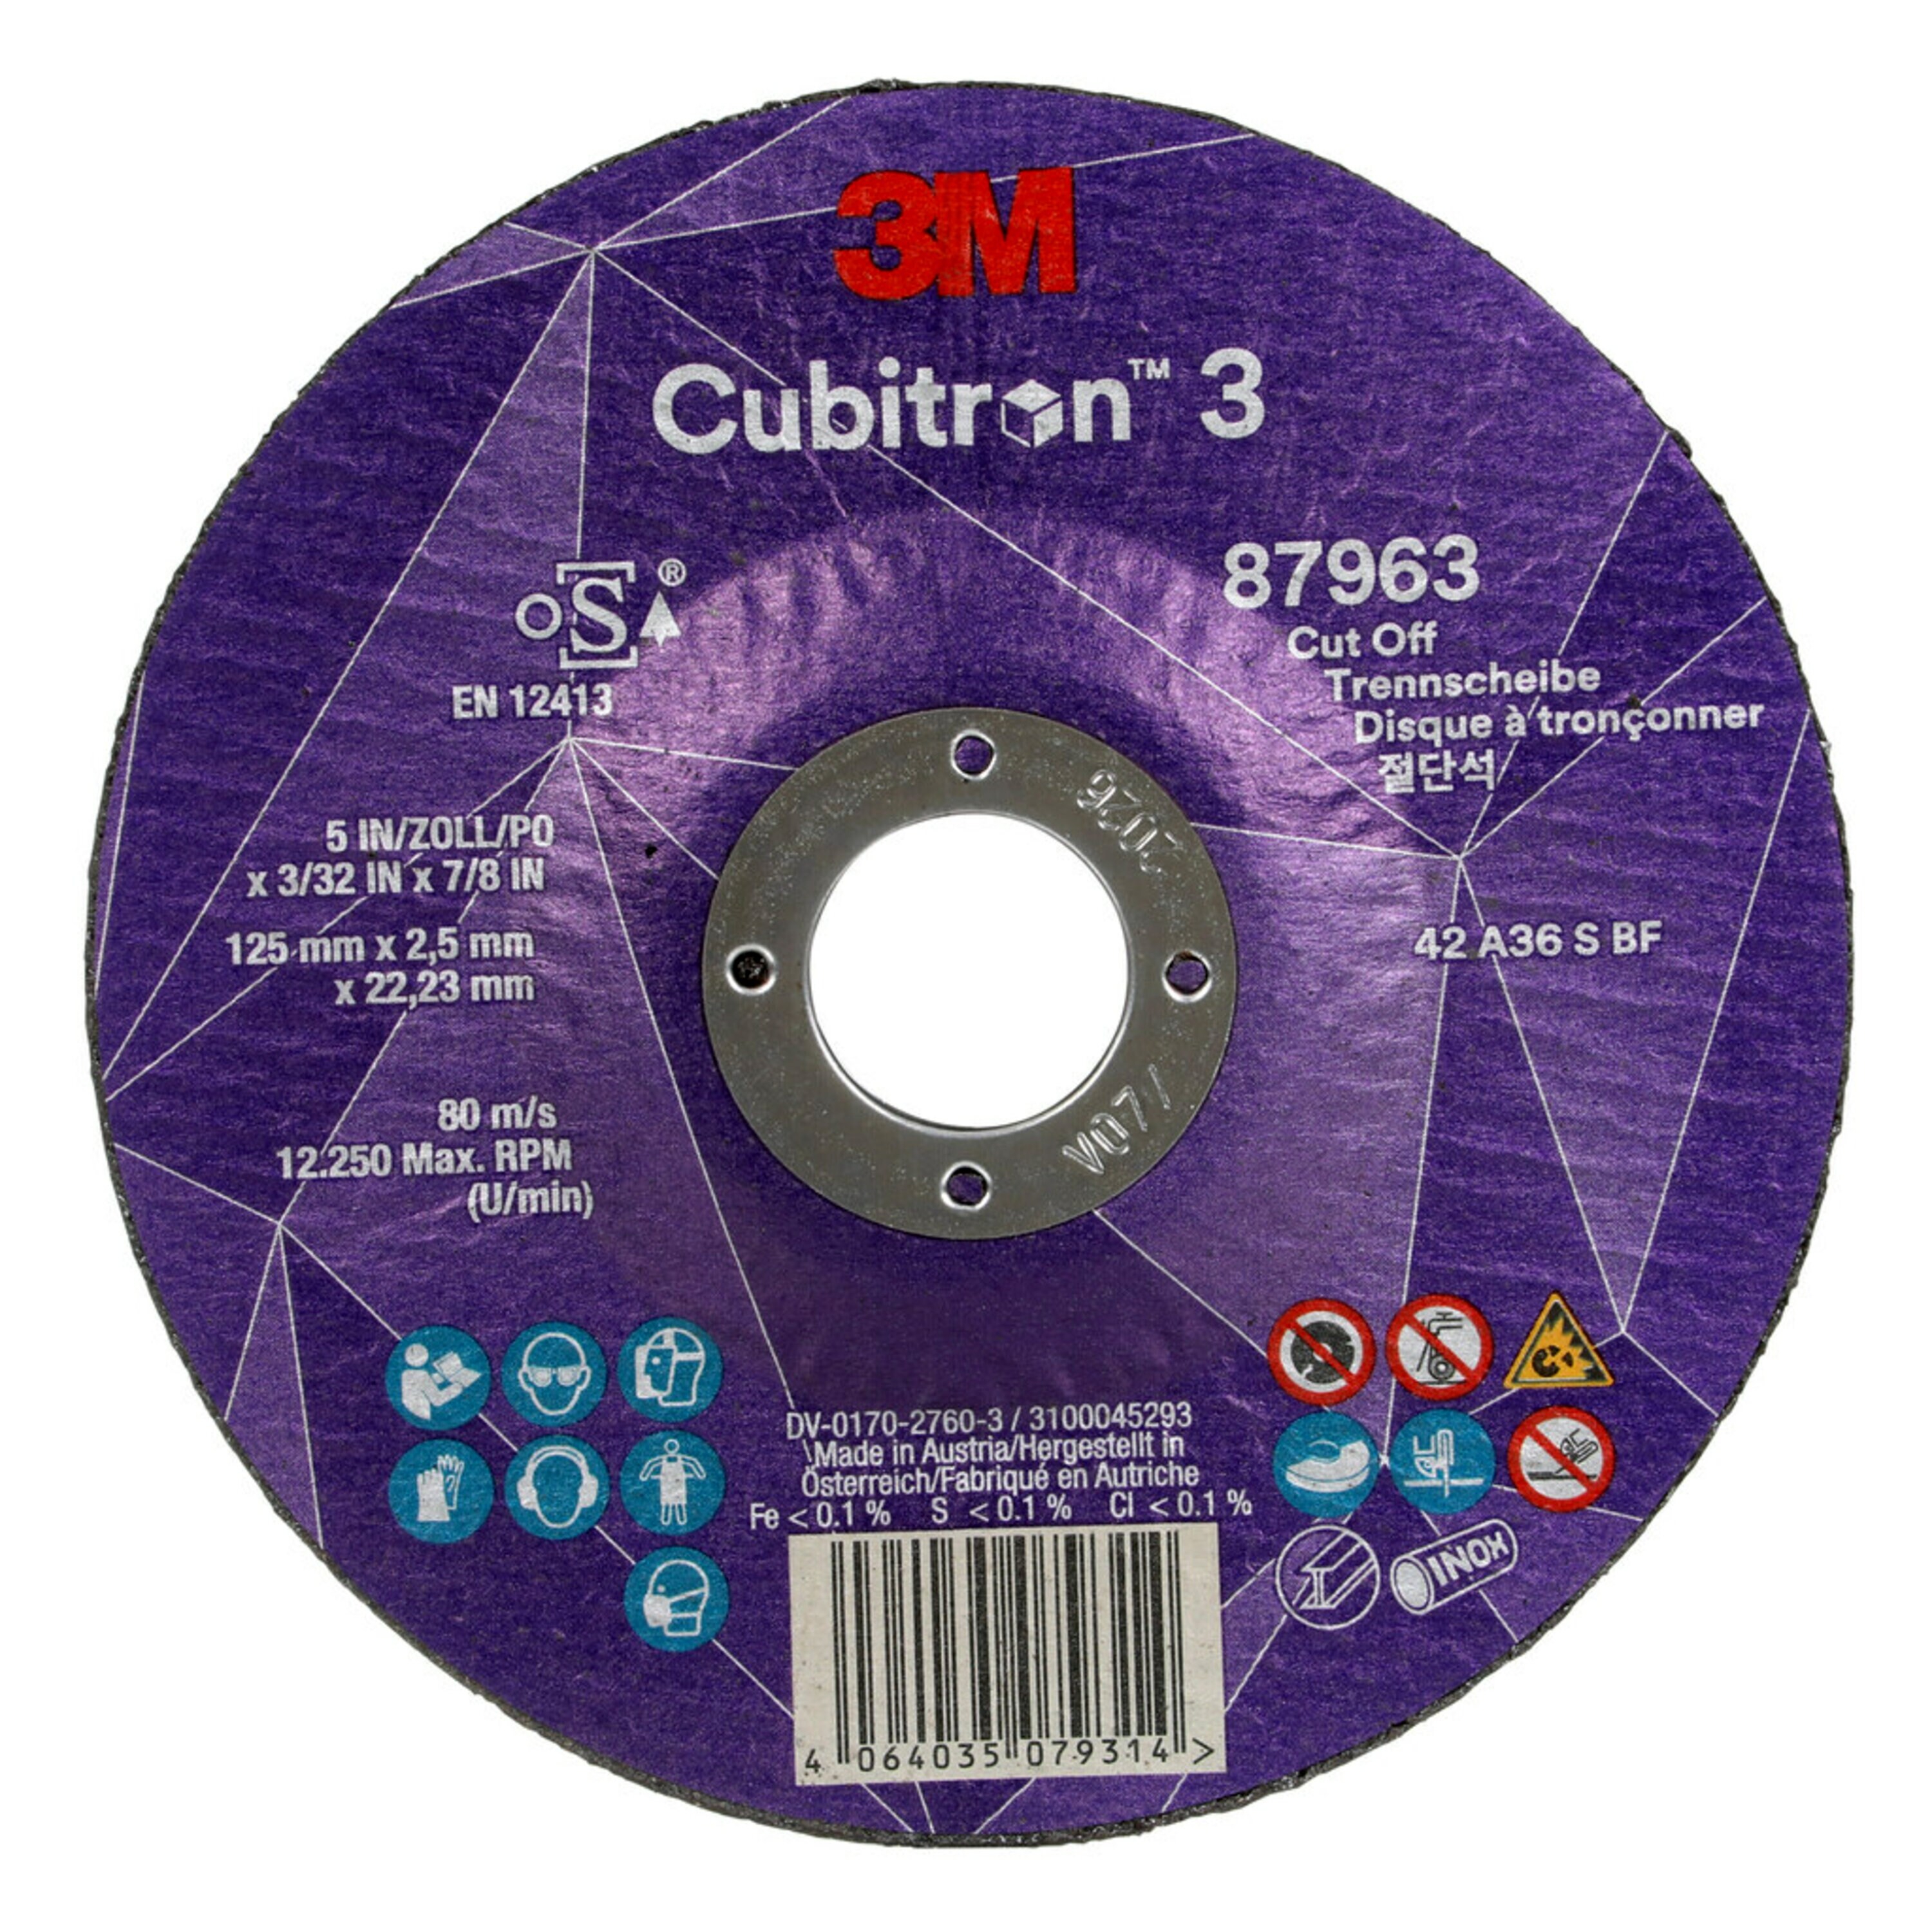 3M Cubitron 3 disco da taglio, 125 mm, 2,5 mm, 22,23 mm, 36 , tipo 42 #87963